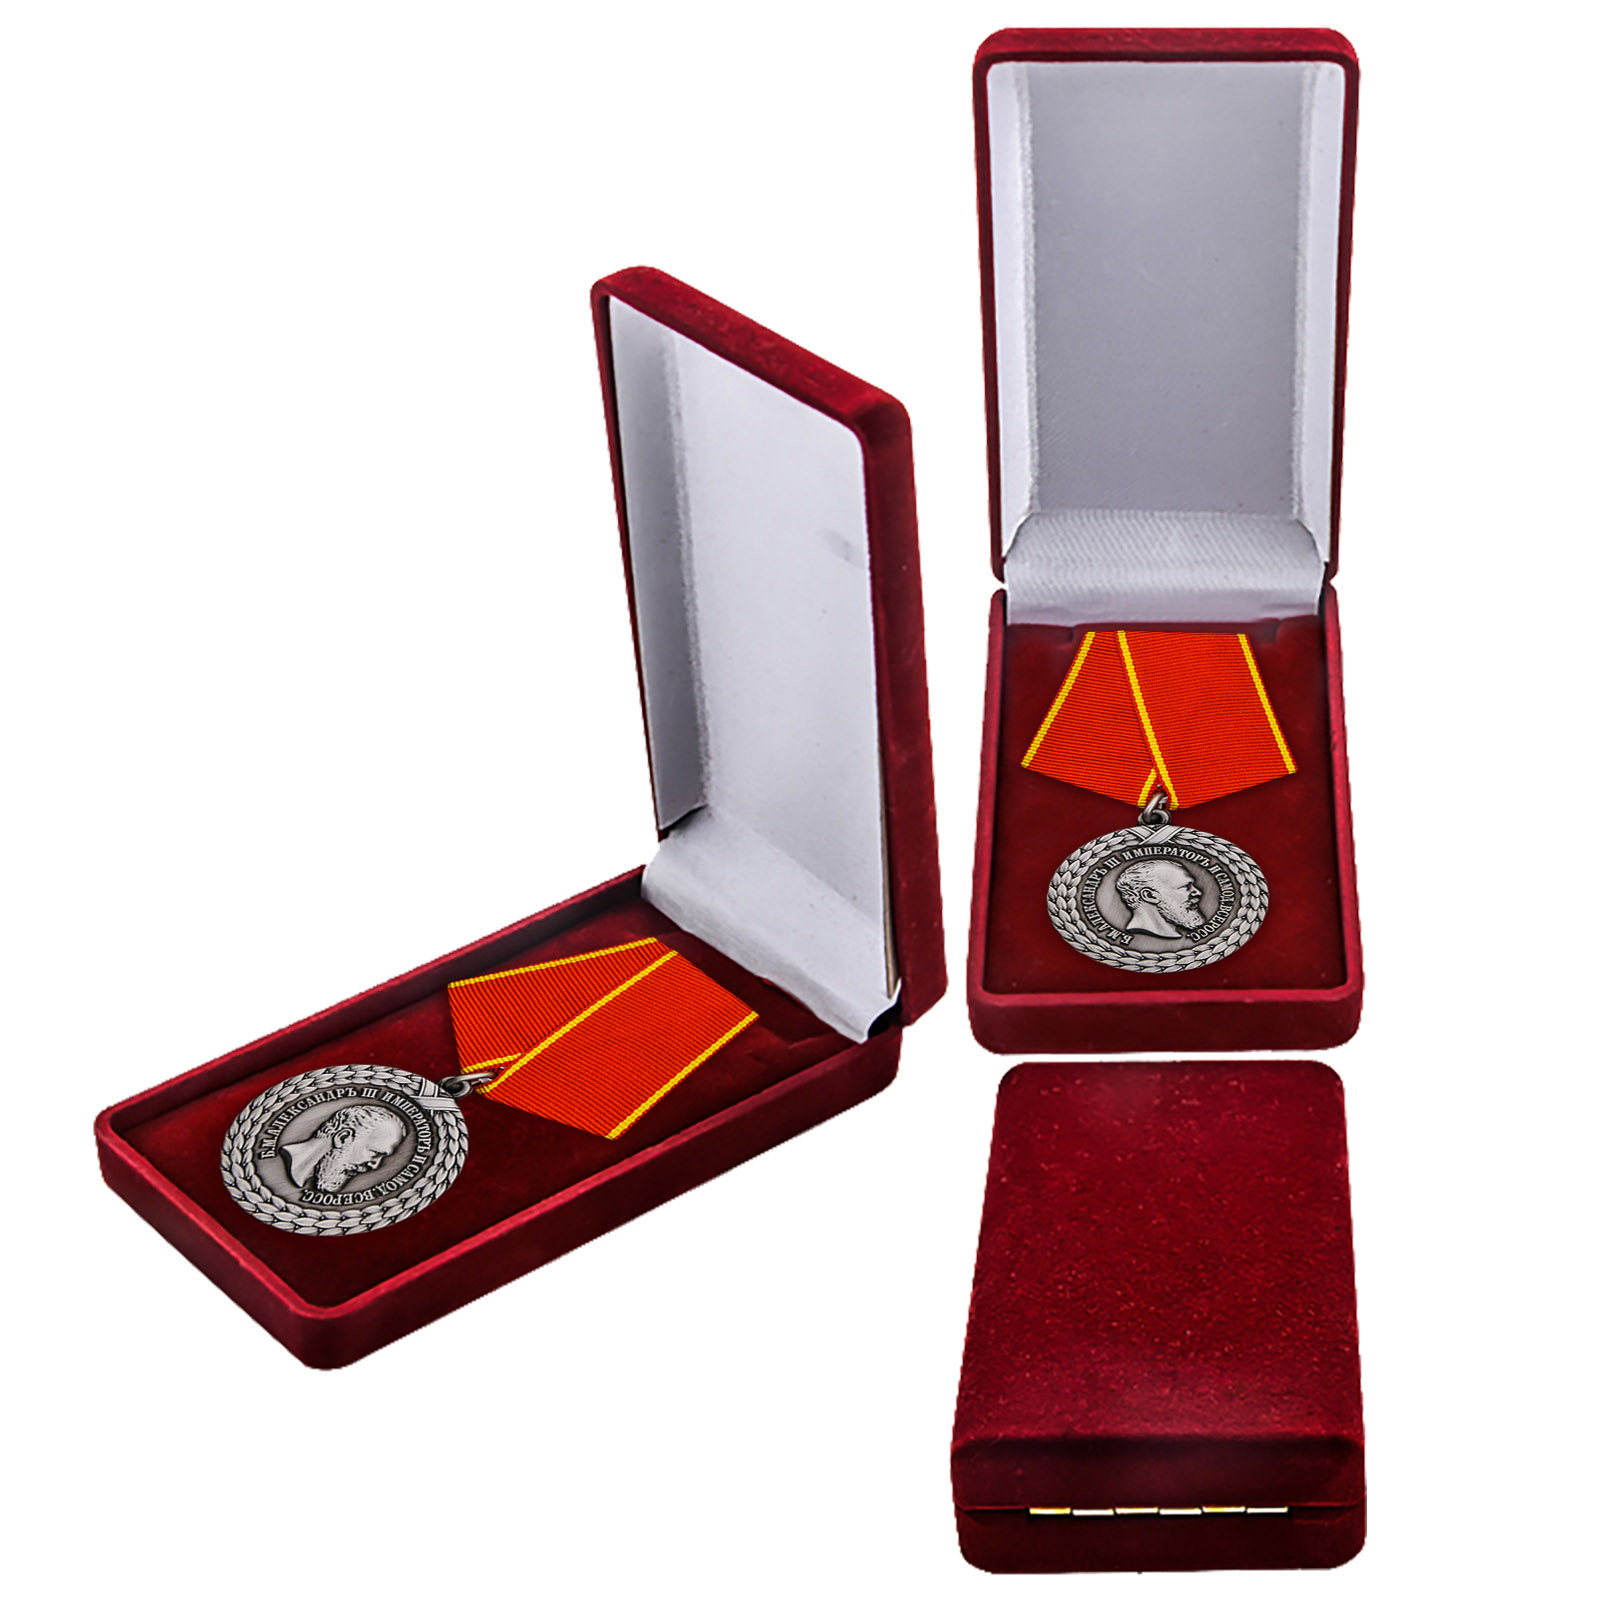 Купить медаль Александра III За беспорочную службу в тюремной страже в подарок